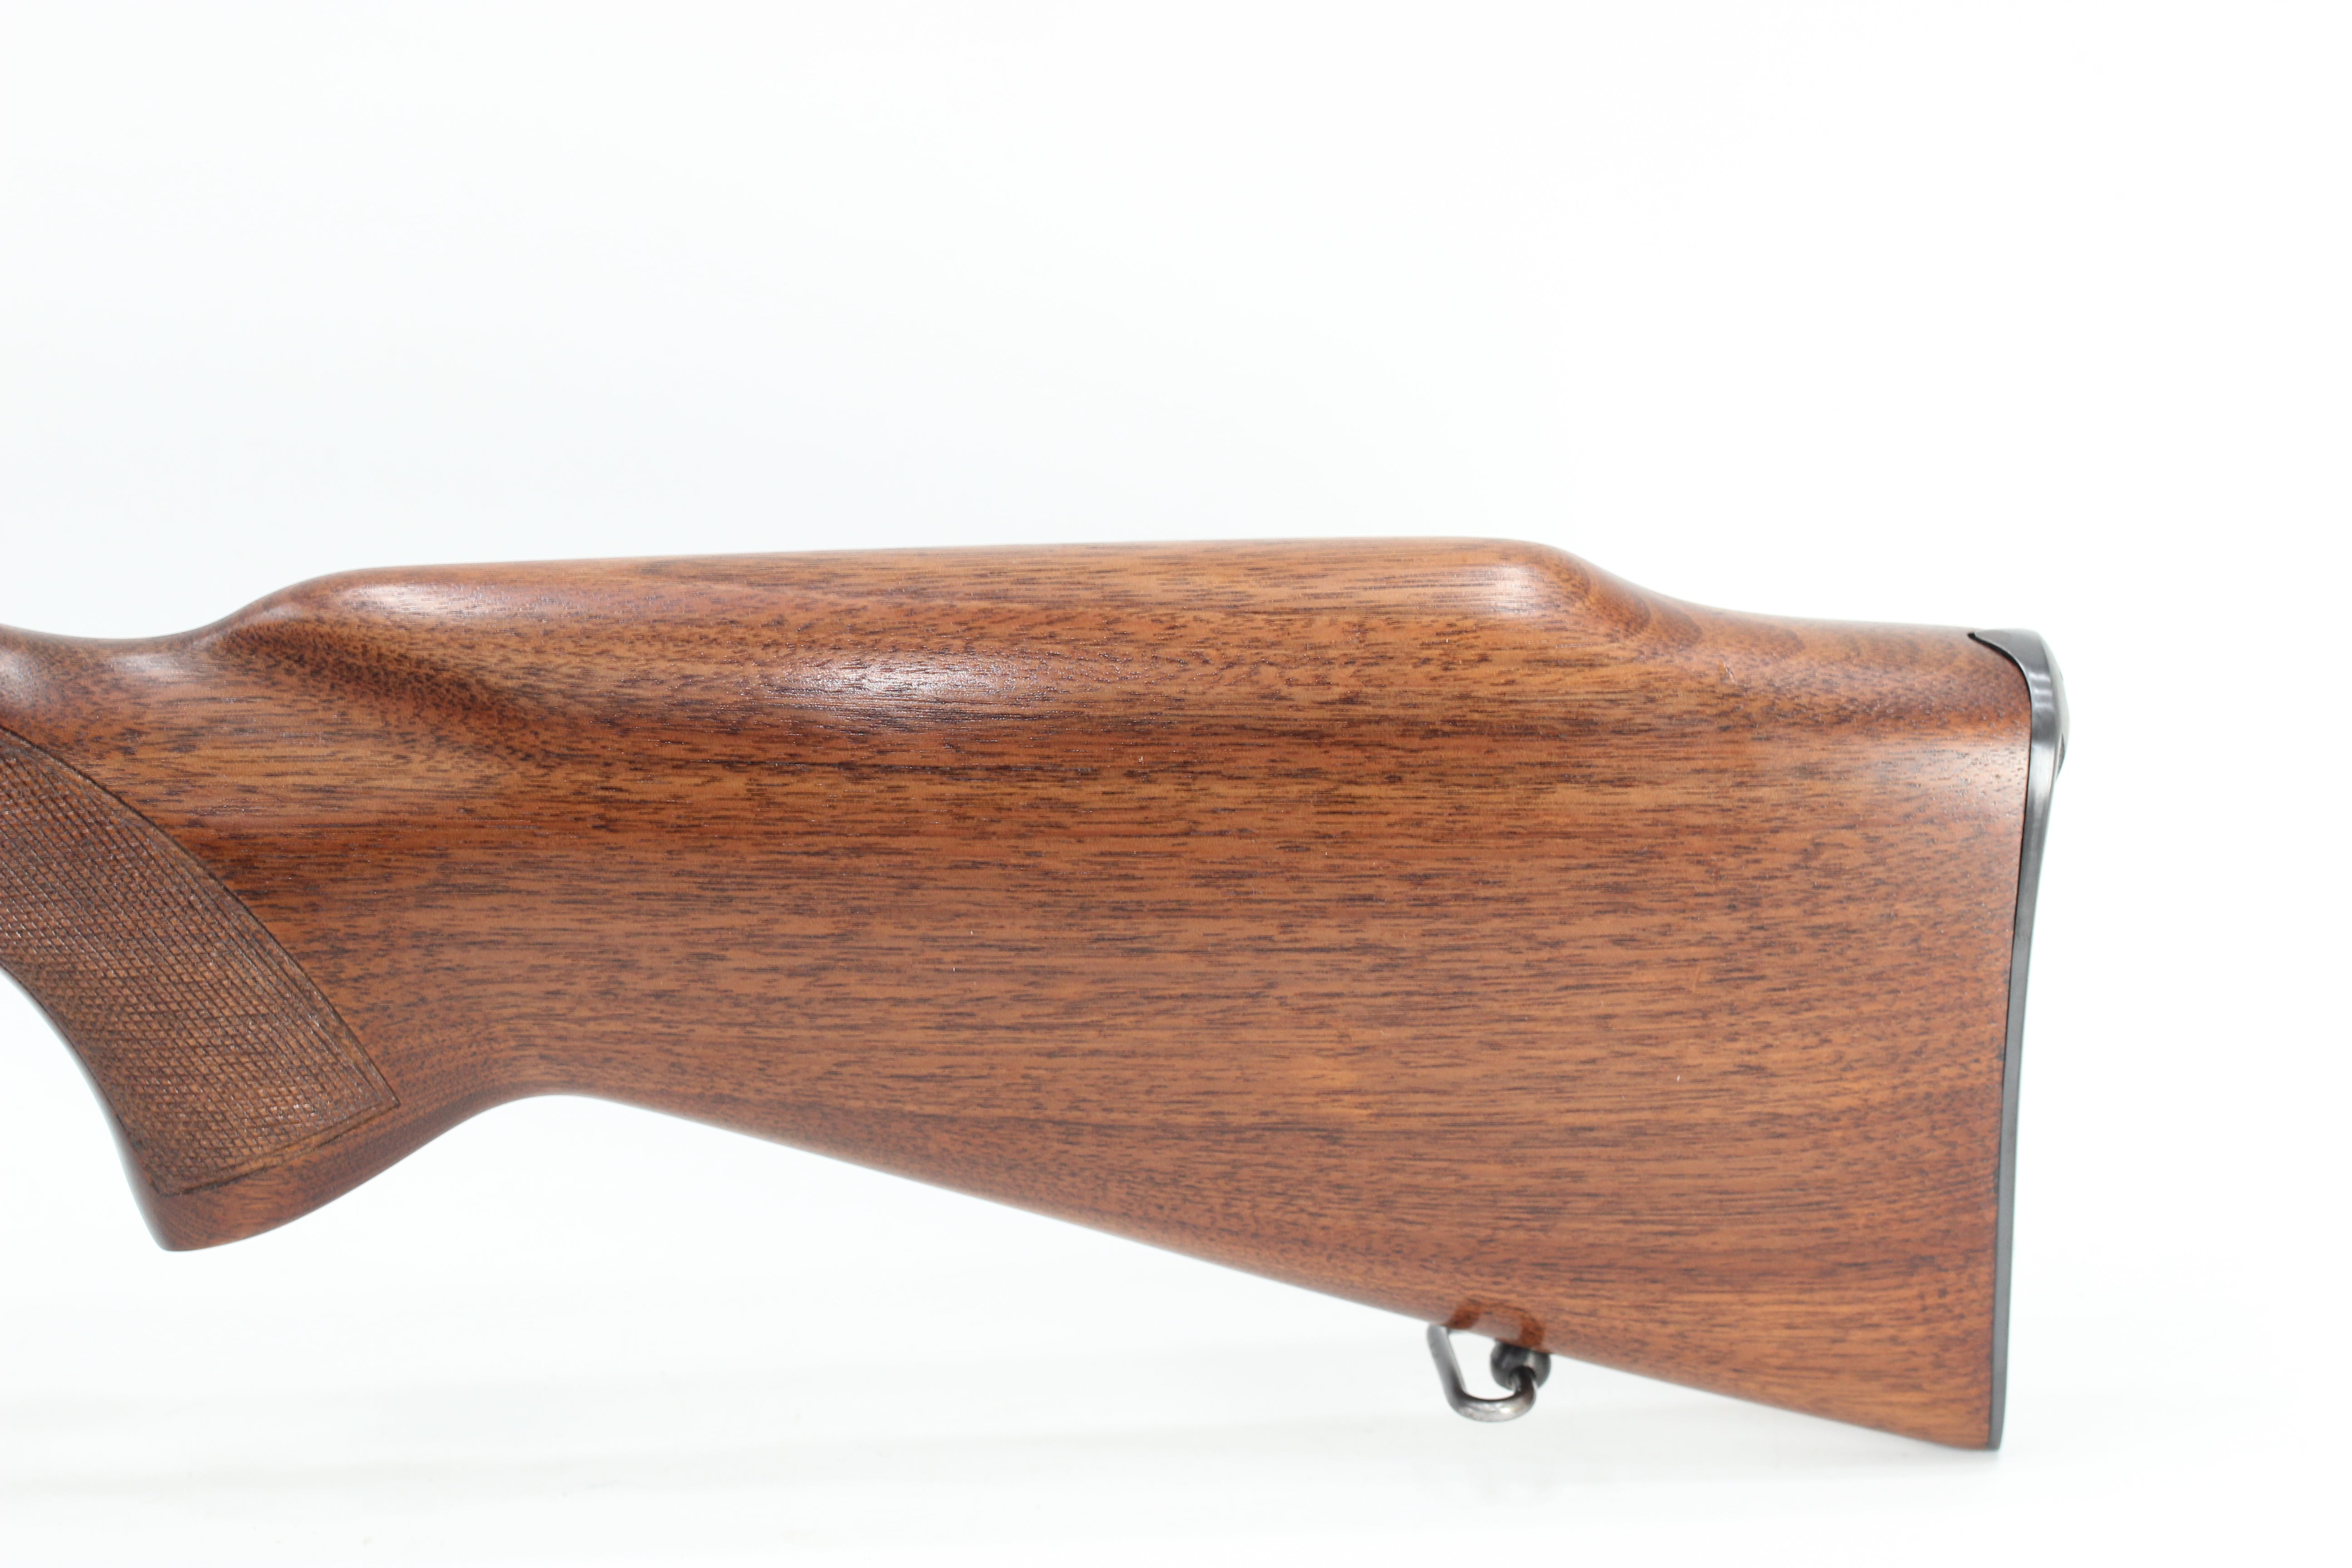 .300 H&H Mag Standard Rifle - 1956